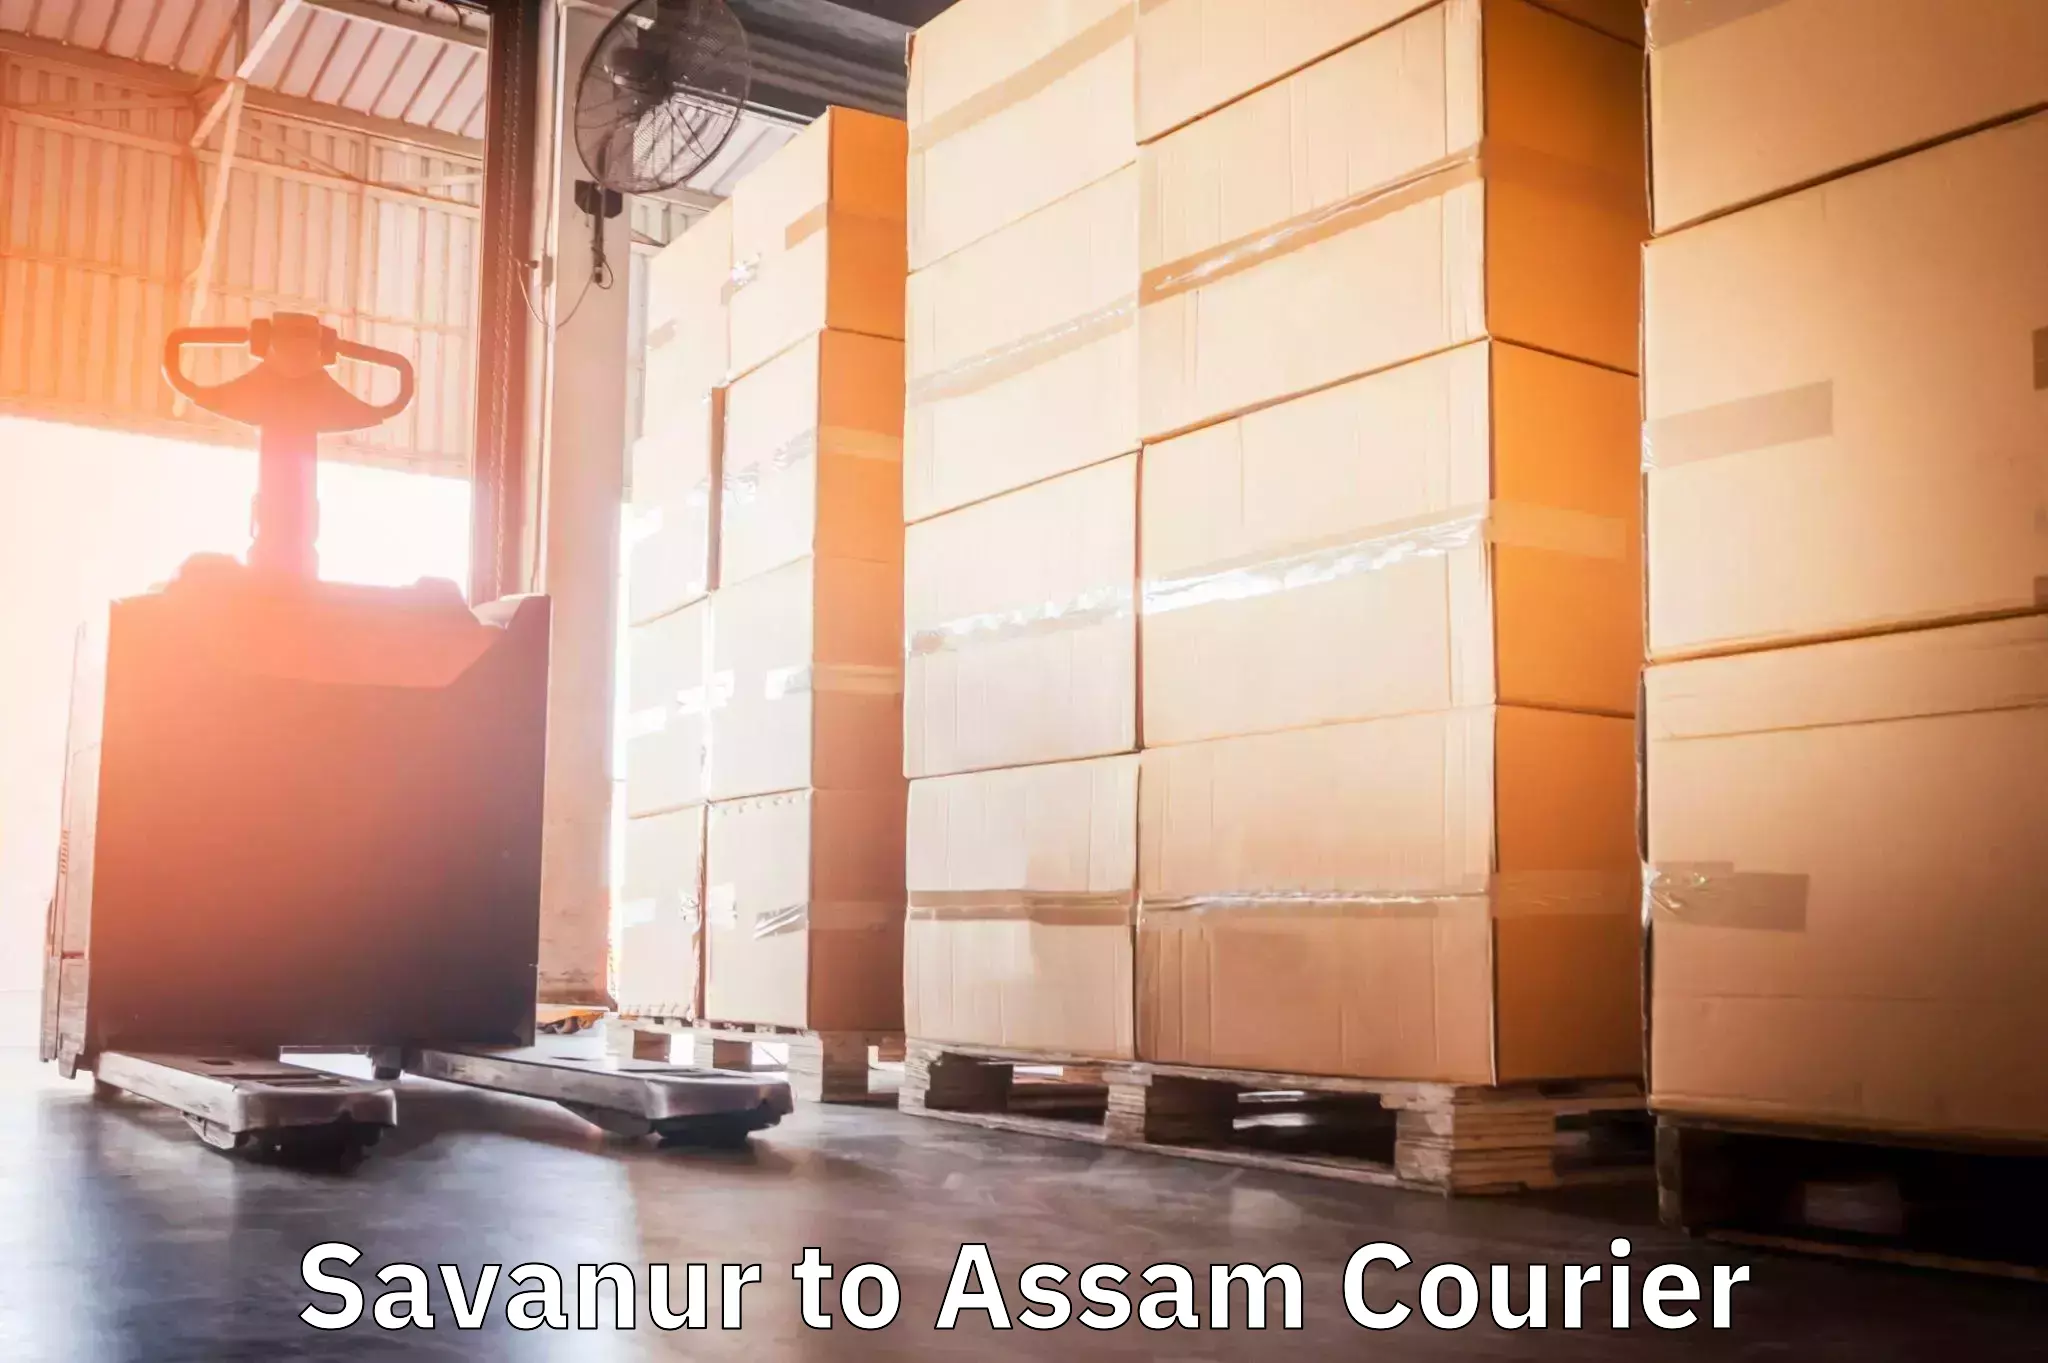 Global logistics network Savanur to Karbi Anglong